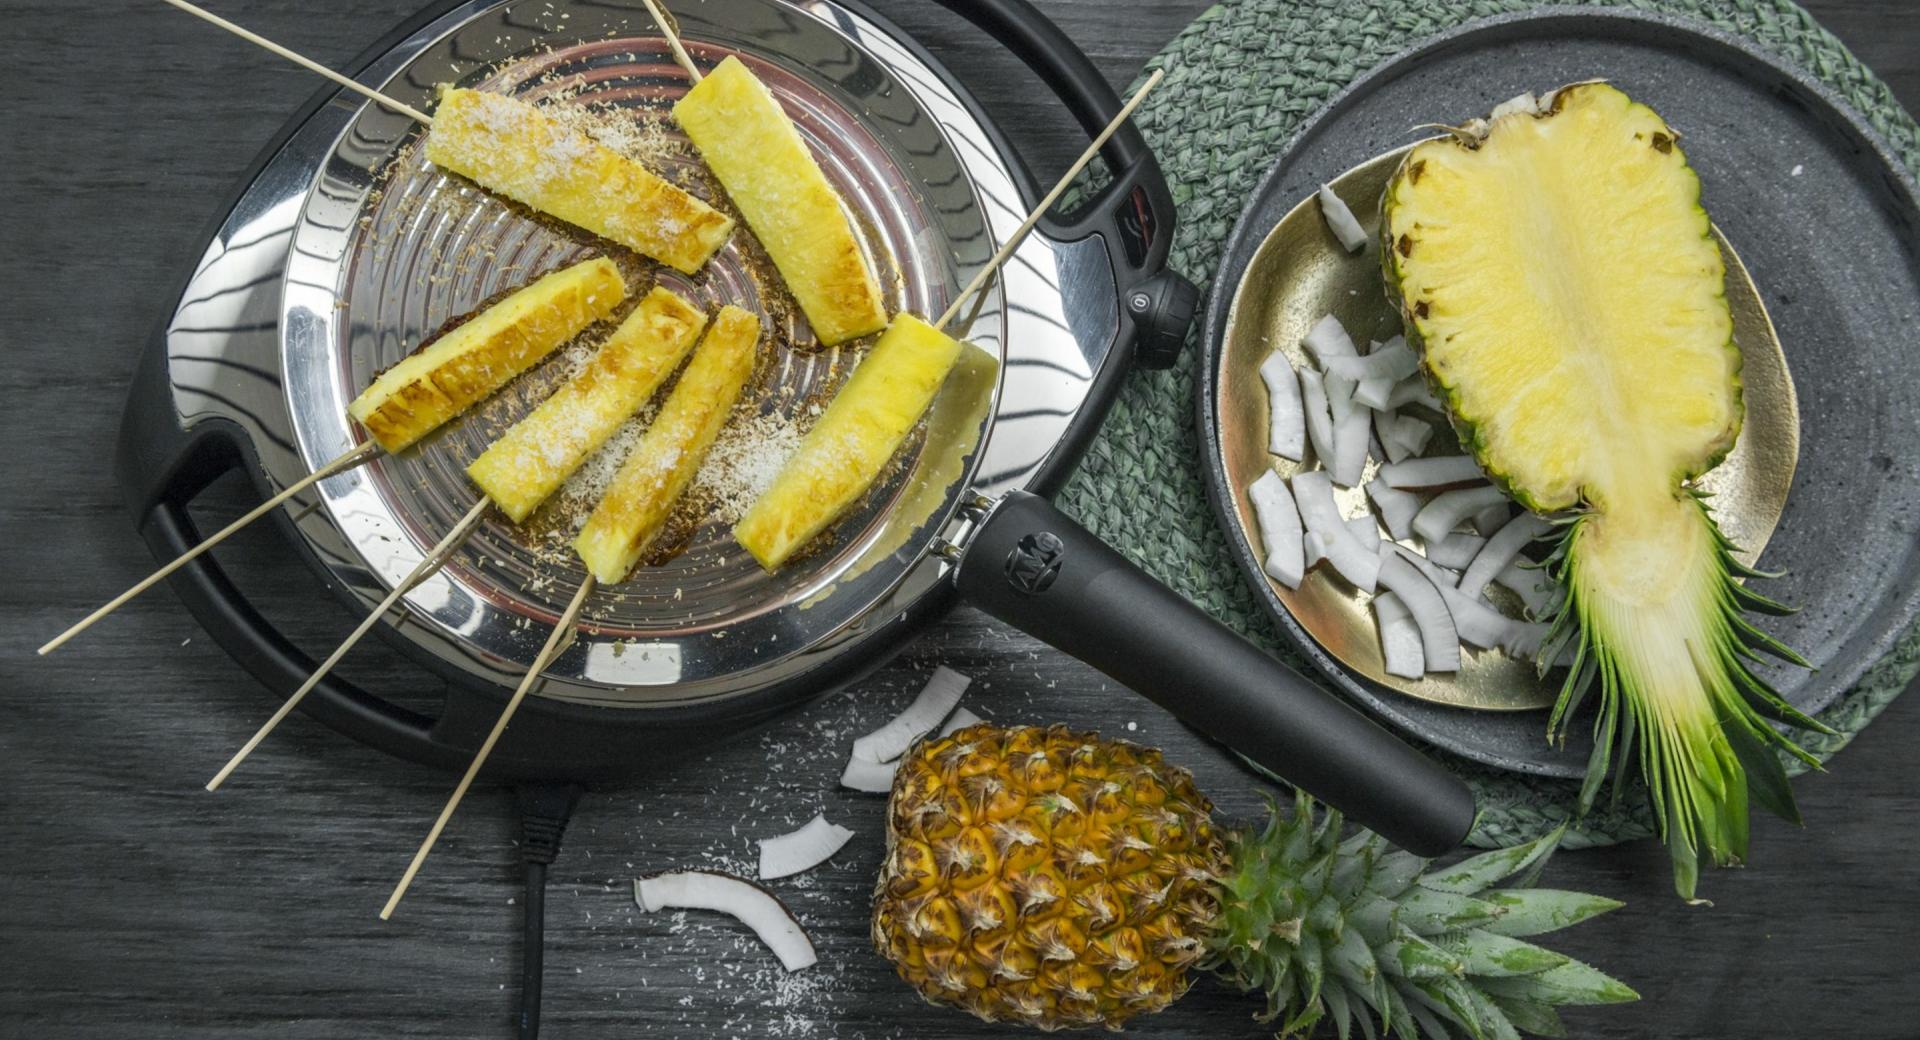 Roasted pineapple skewers